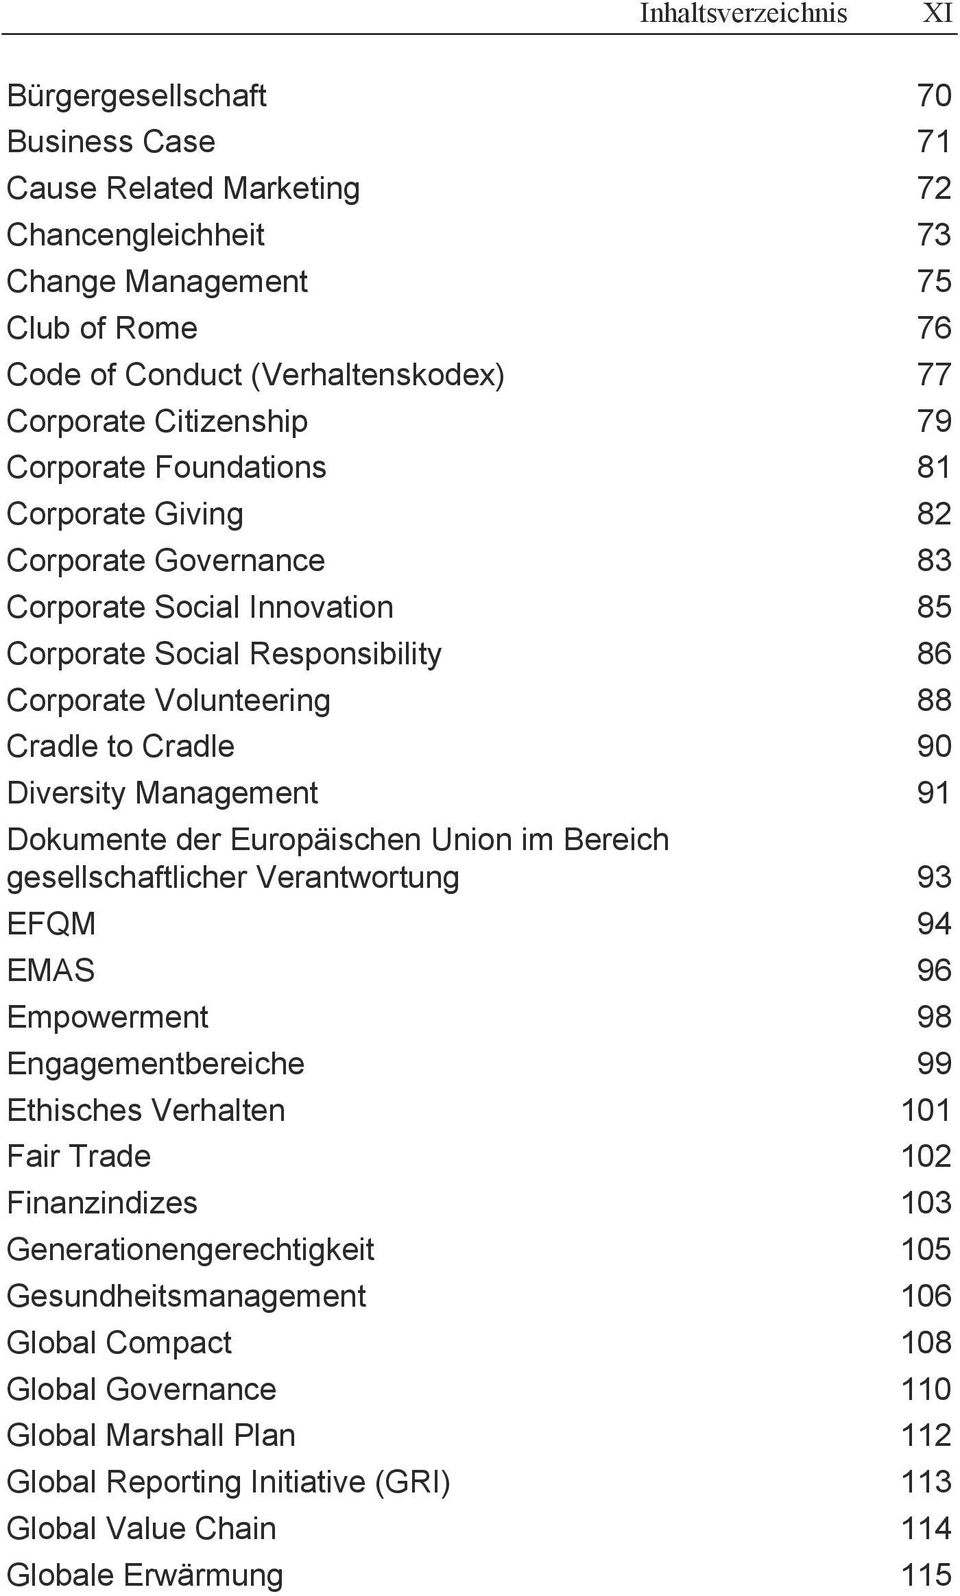 Diversity Management 91 Dokumente der Europäischen Union im Bereich gesellschaftlicher Verantwortung 93 EFQM 94 EMAS 96 Empowerment 98 Engagementbereiche 99 Ethisches Verhalten 101 Fair Trade 102